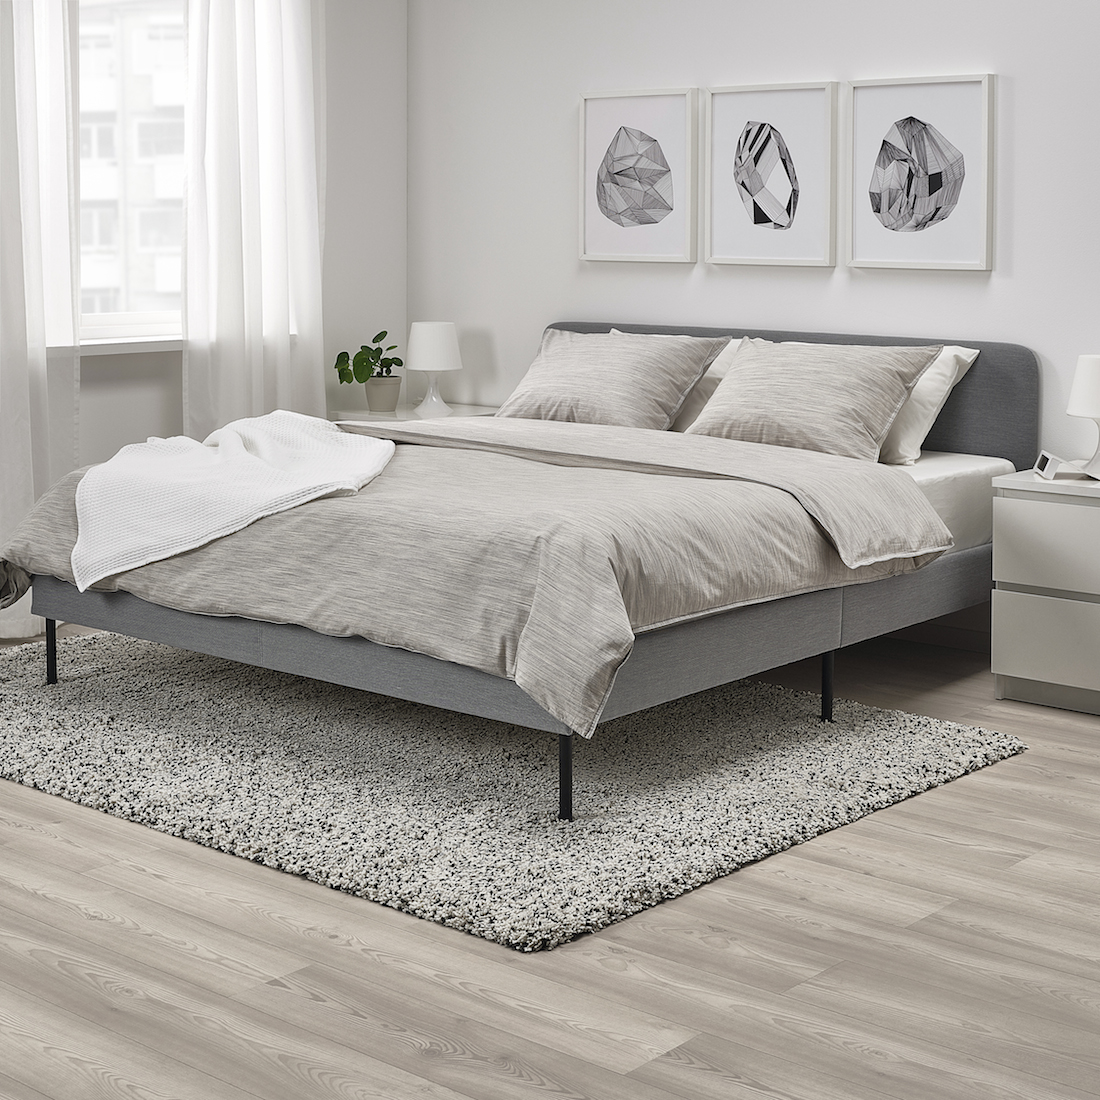 SLATTUM queen bed IKEA 2020 release